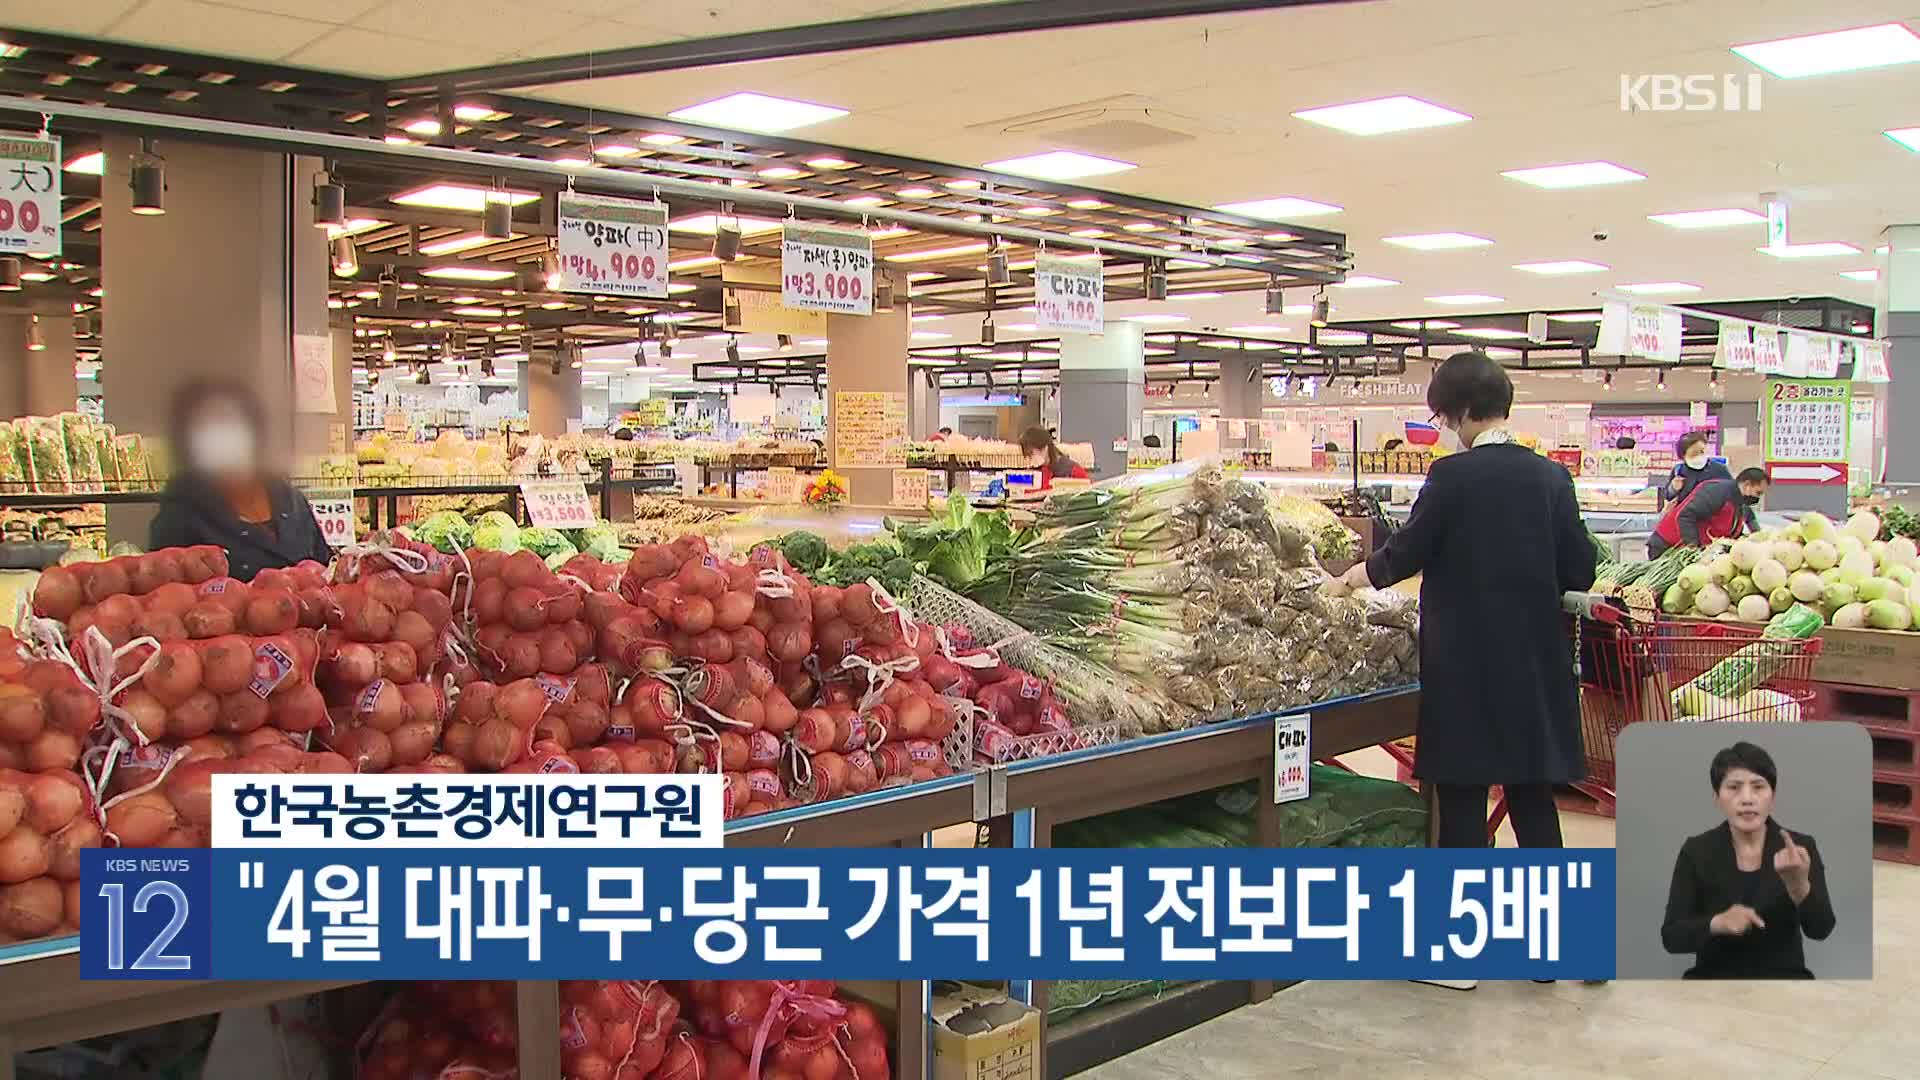 한국농촌경제연구원 “4월 대파·무·당근 가격 1년 전보다 1.5배”